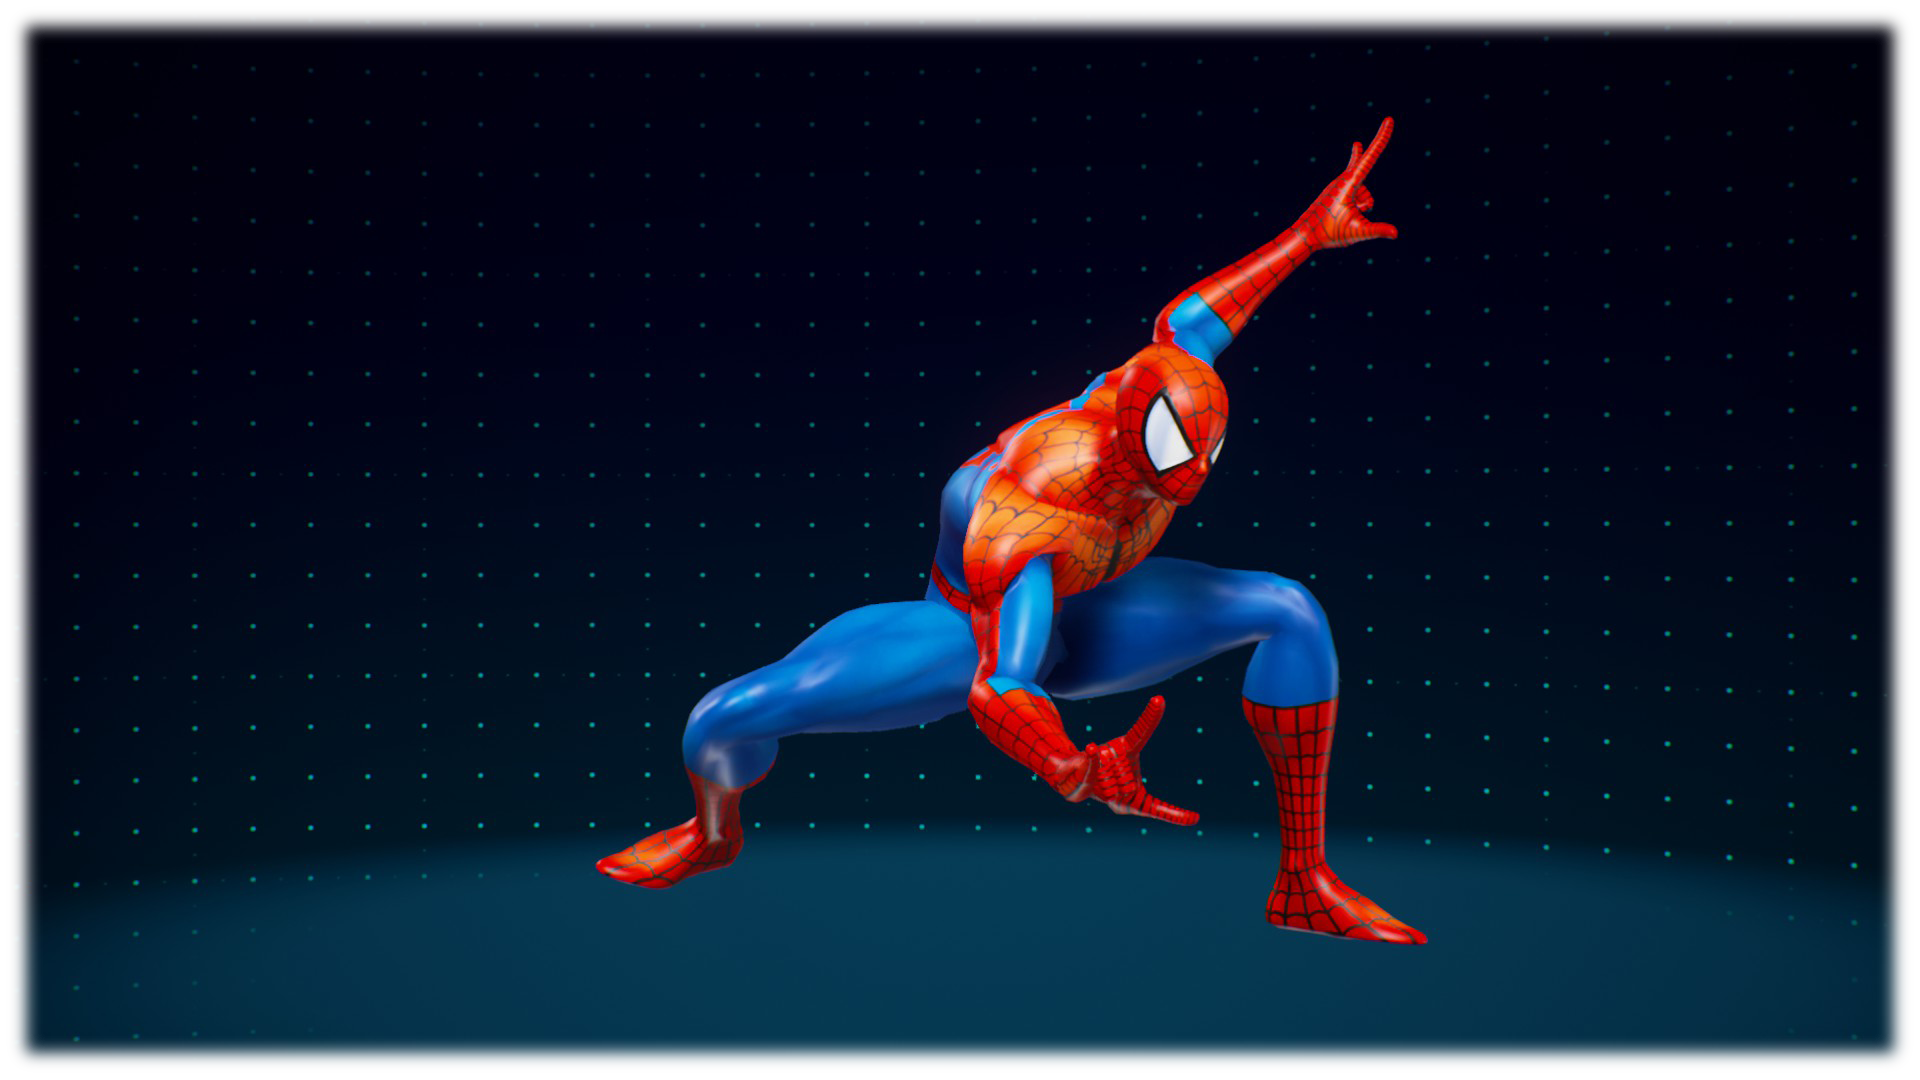 MVCI] MVC3 Spider-Man by Natsu-Ken on DeviantArt